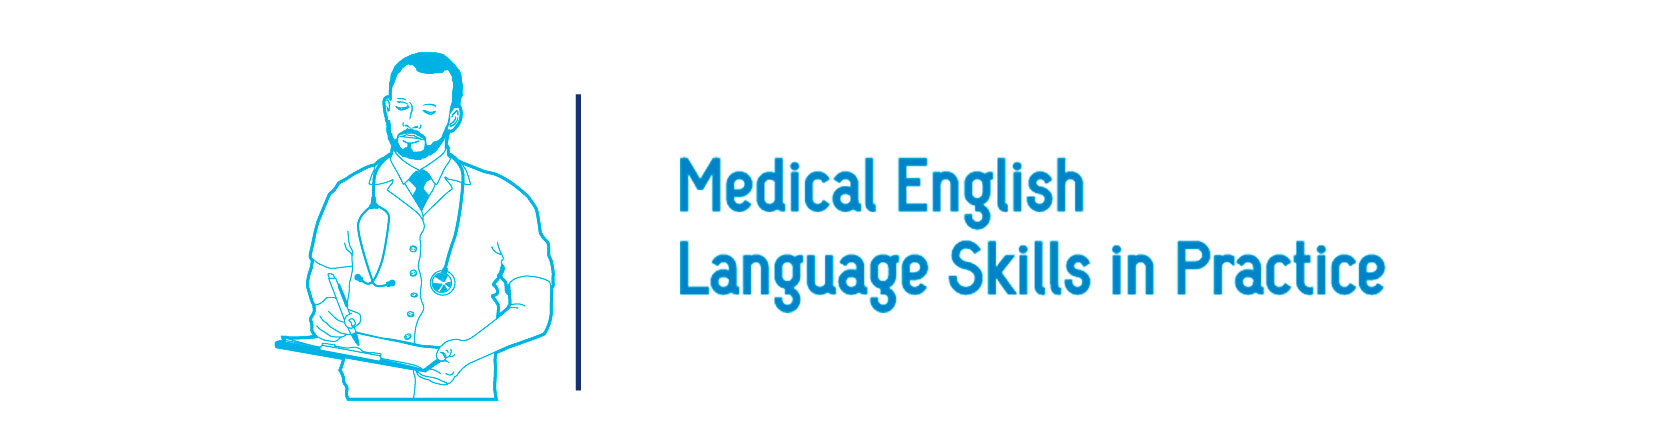 Inglés médico y casos clínicos